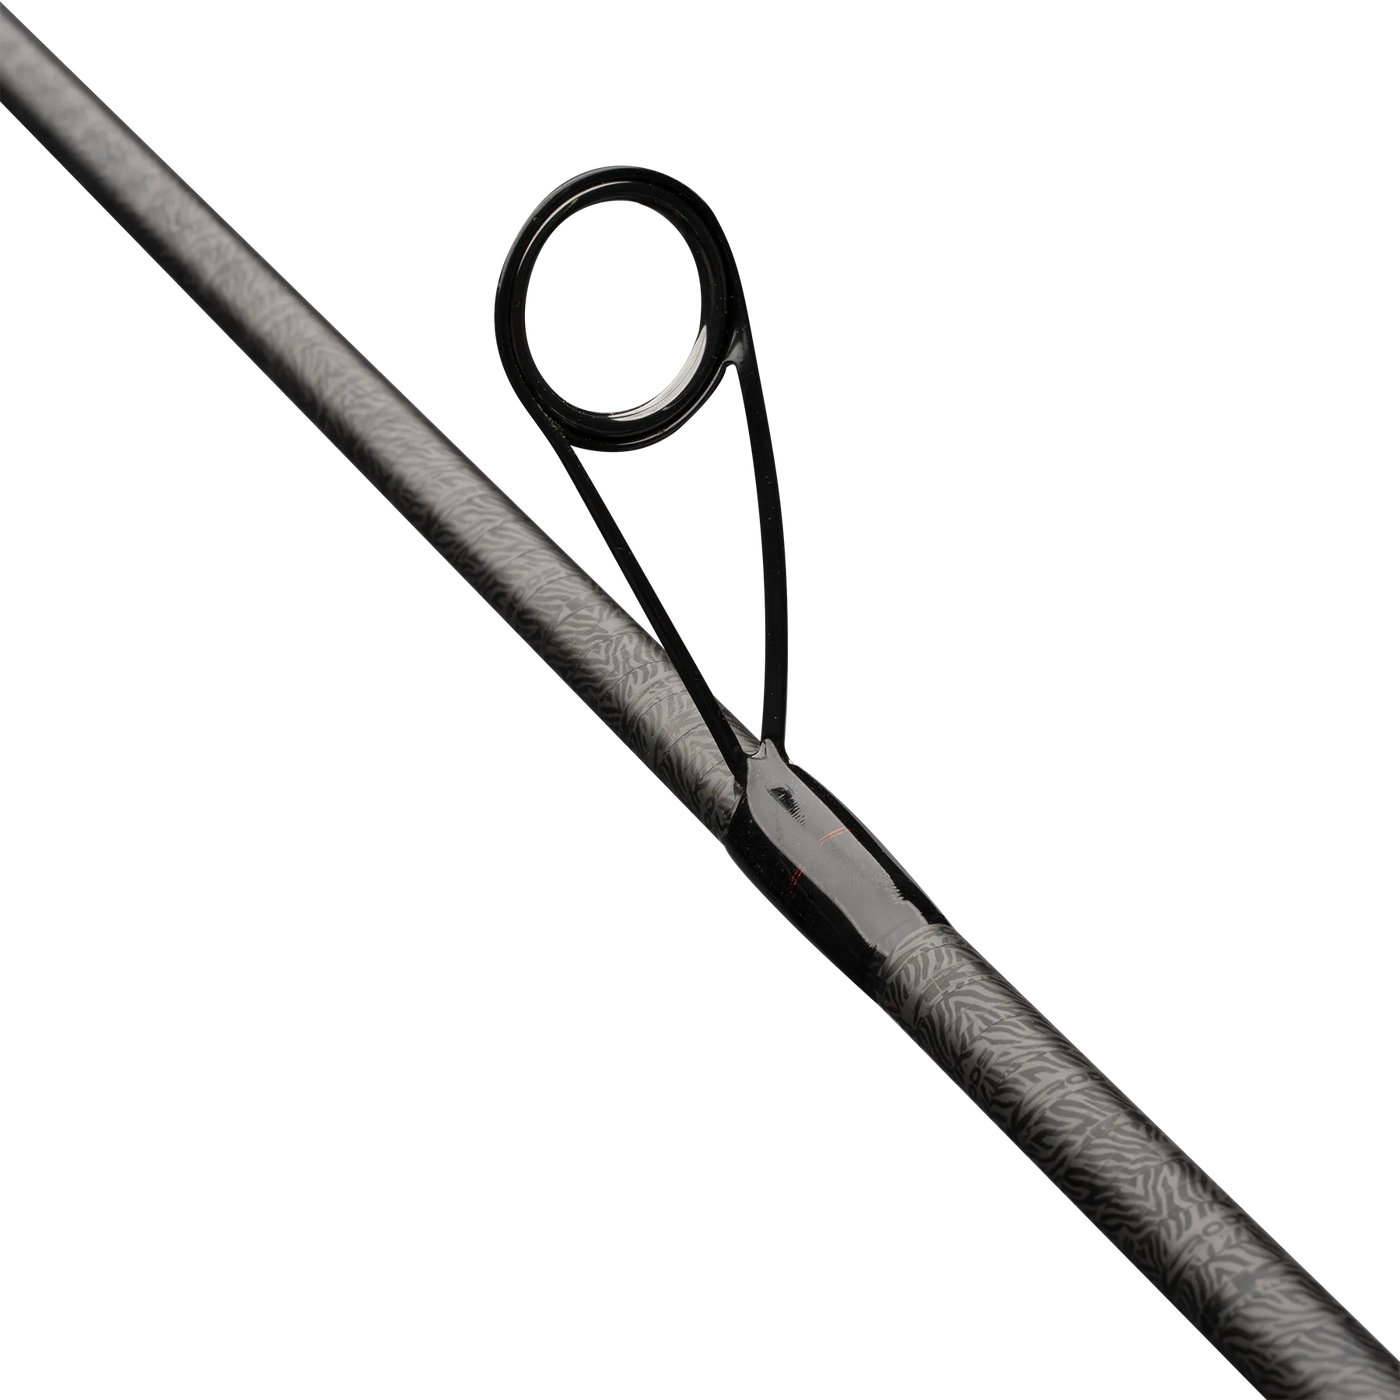 Invoker Pro Series Spinning Rod